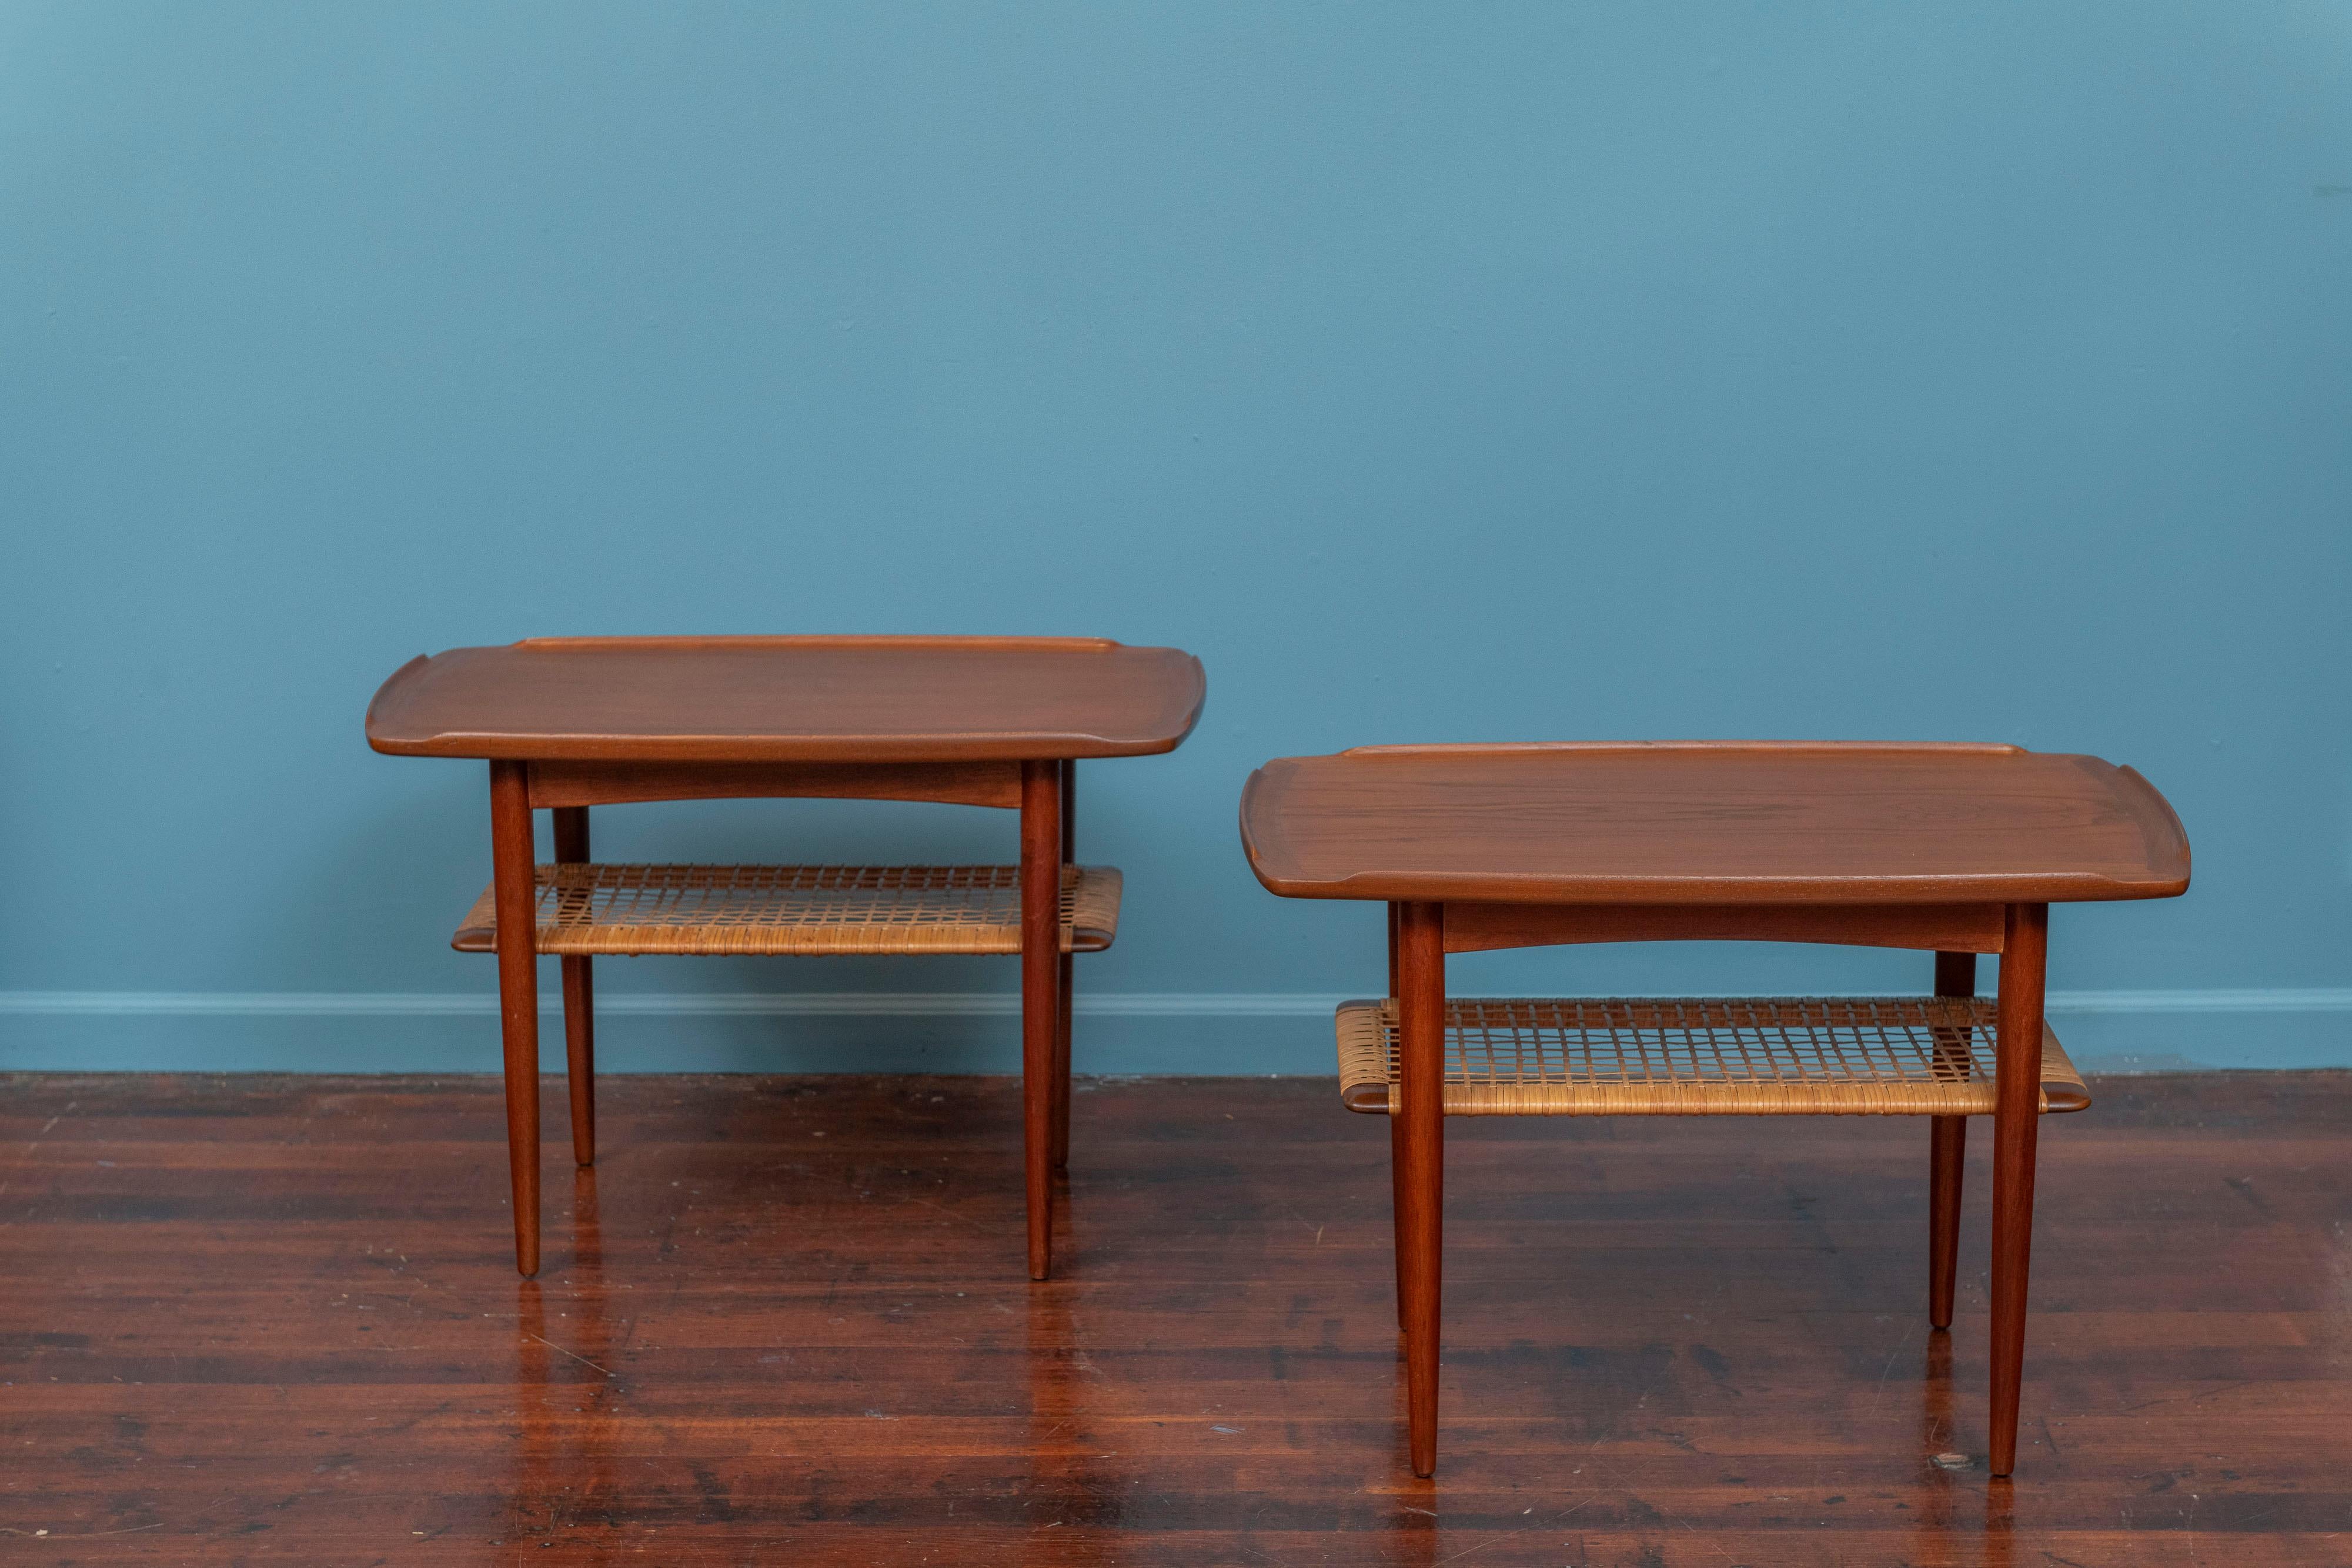 Poul Jensen conçoit des tables d'appoint pour Selig, Danemark. Construction et matériaux de haute qualité avec un souci du détail. Chants sculptés en teck massif avec étagères cannelées en dessous, pour un design léger et aéré. Tout juste remis à